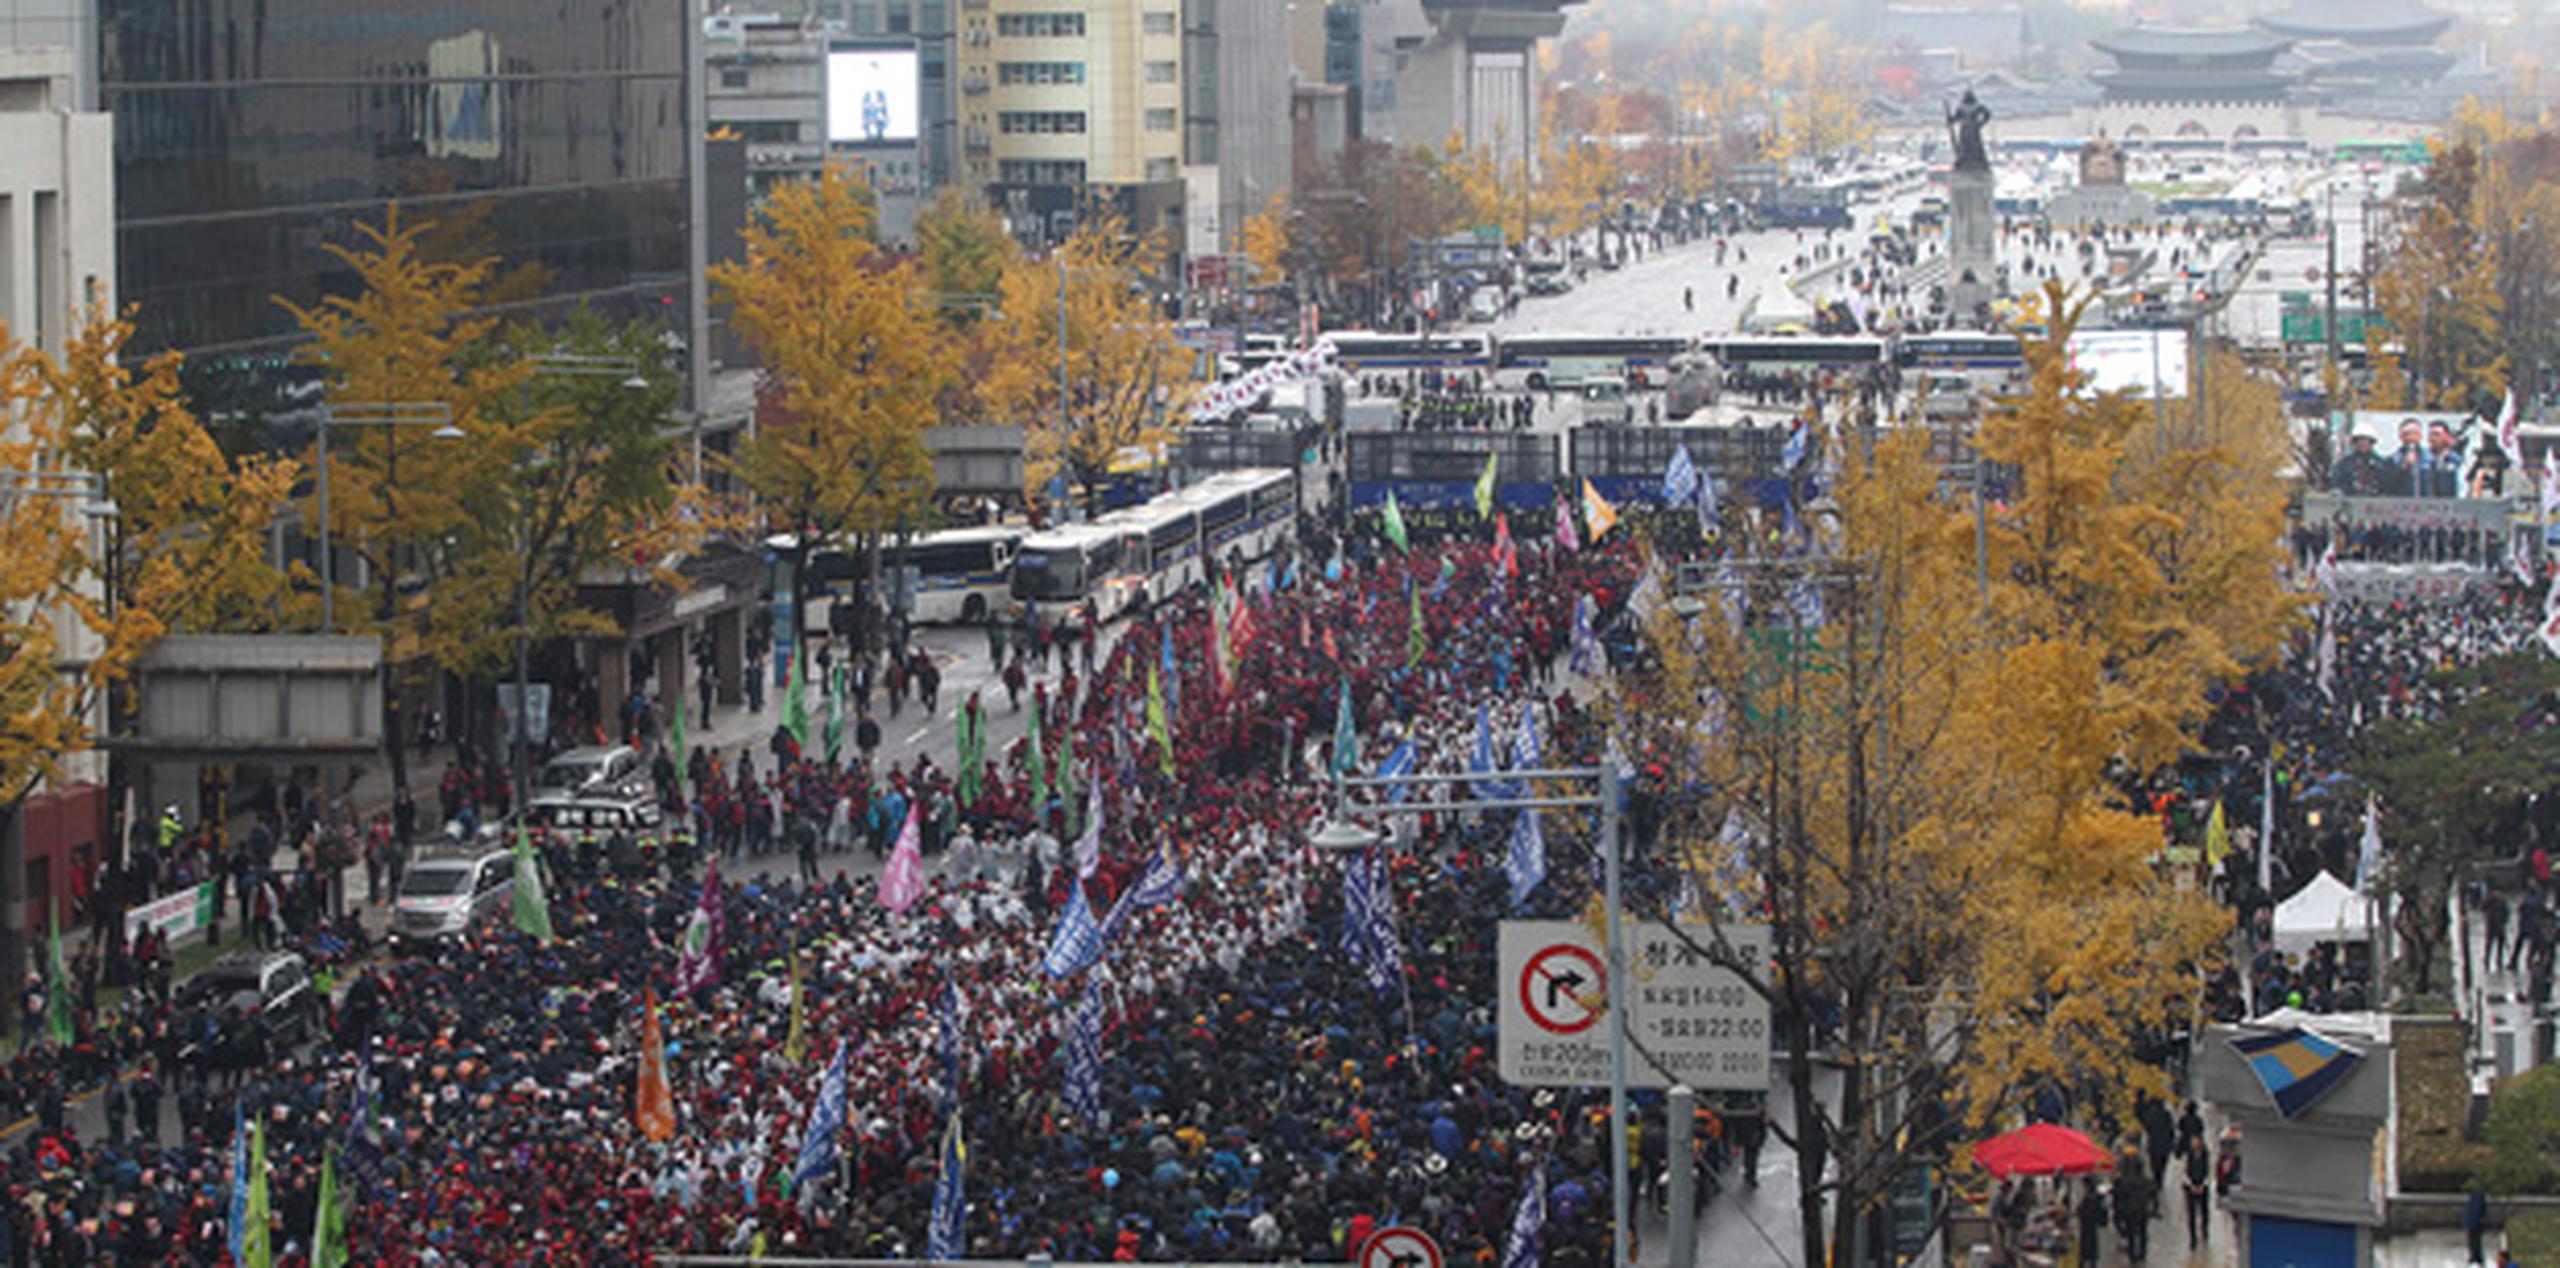 La asistencia fue considerablemente menor que en la protesta de noviembre y en su continuación pacífica del 5 de diciembre, que en total reunieron a más de 80,000 personas. (AP)